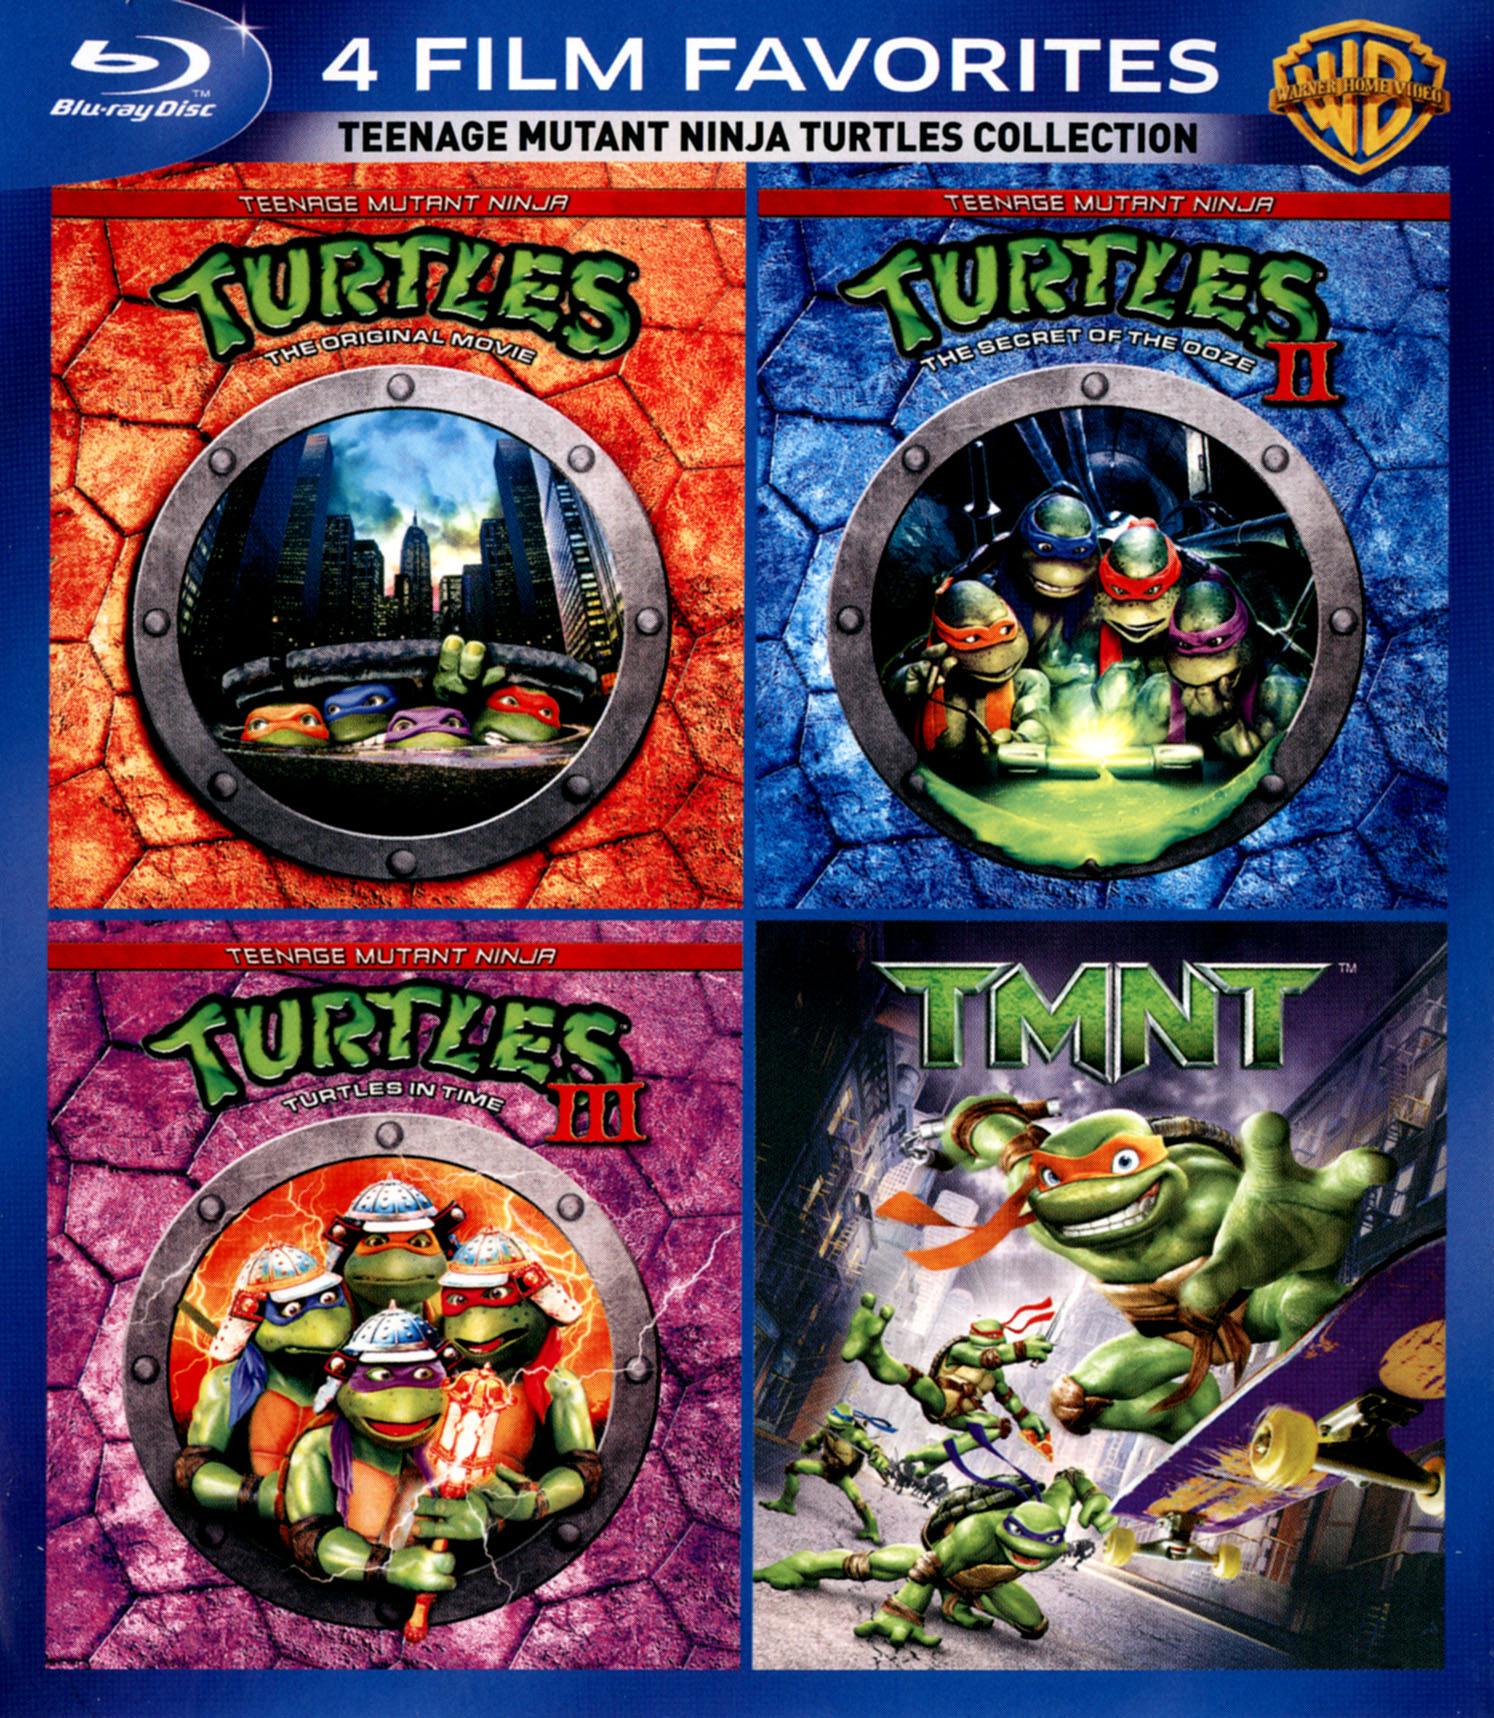 Teenage Mutant Ninja Turtles: The Original Movie